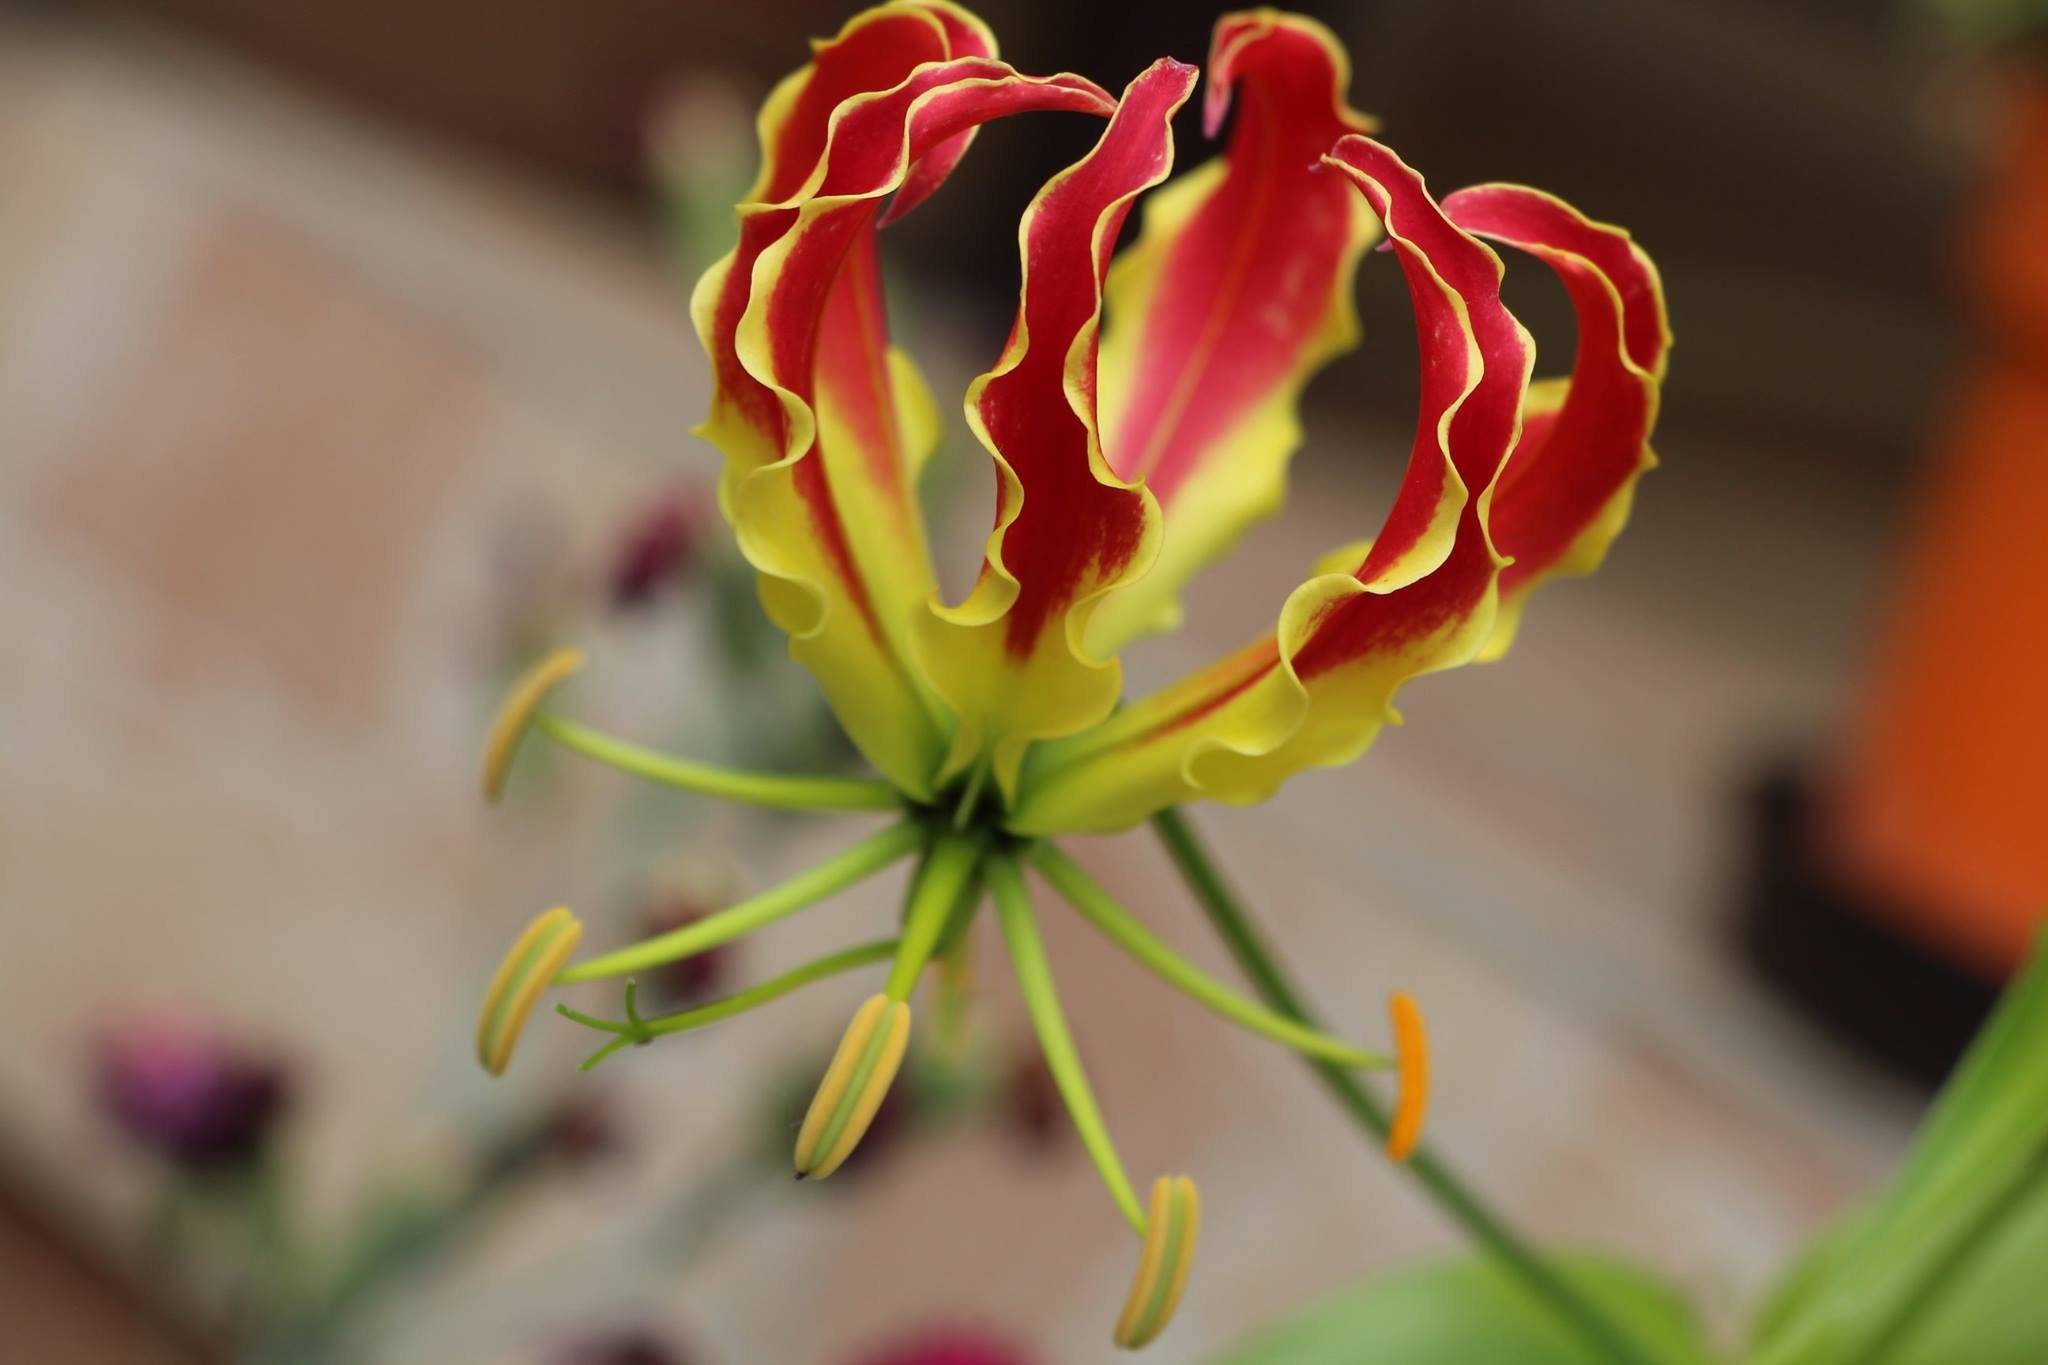 Роскошная глориоза — тропический цветок со сложным характером. рекомендации по посадке и уходу